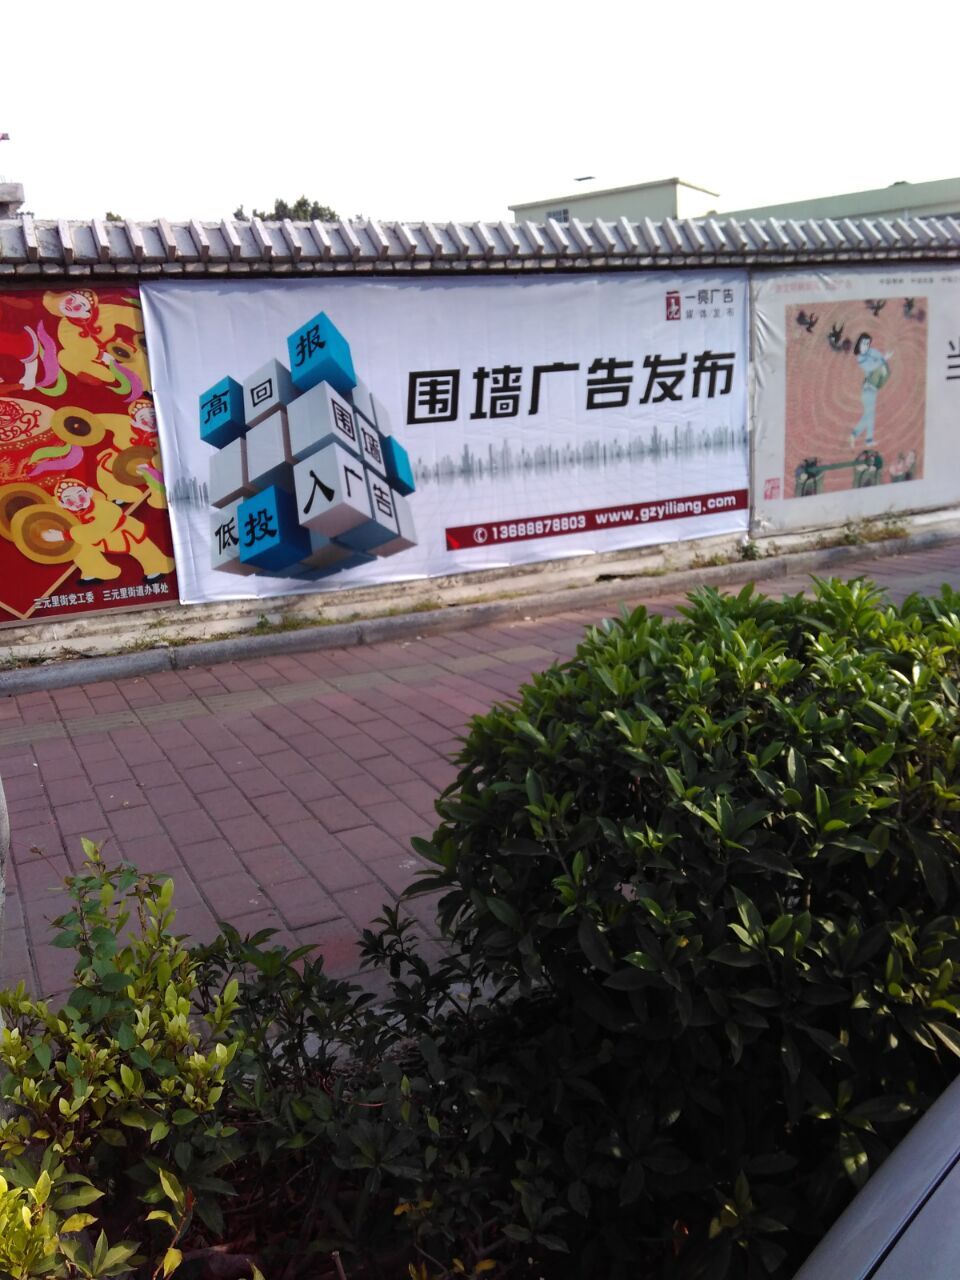 供应广州围墙广告发布--火热进行中图片